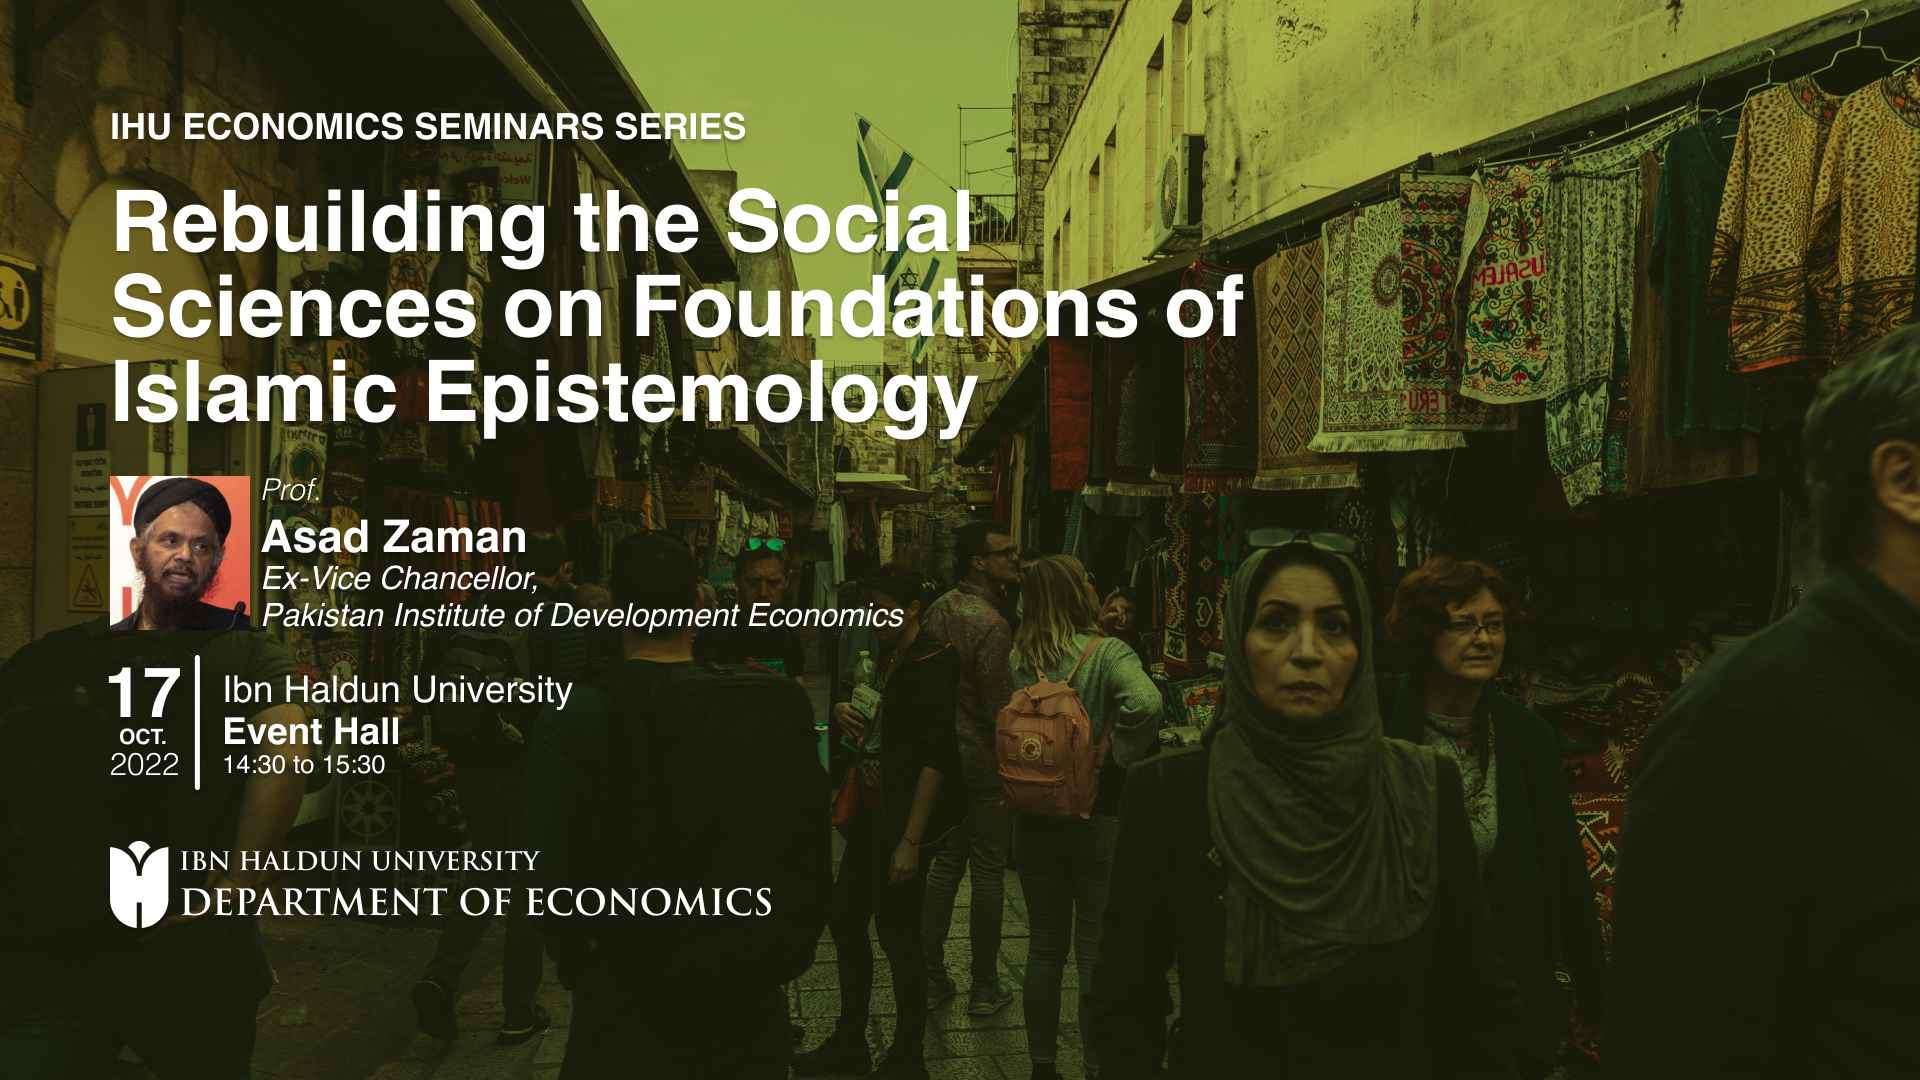 Sosyal Bilimlerin İslami Epistemolojinin Temelleri Üzerinde Yeniden İnşası